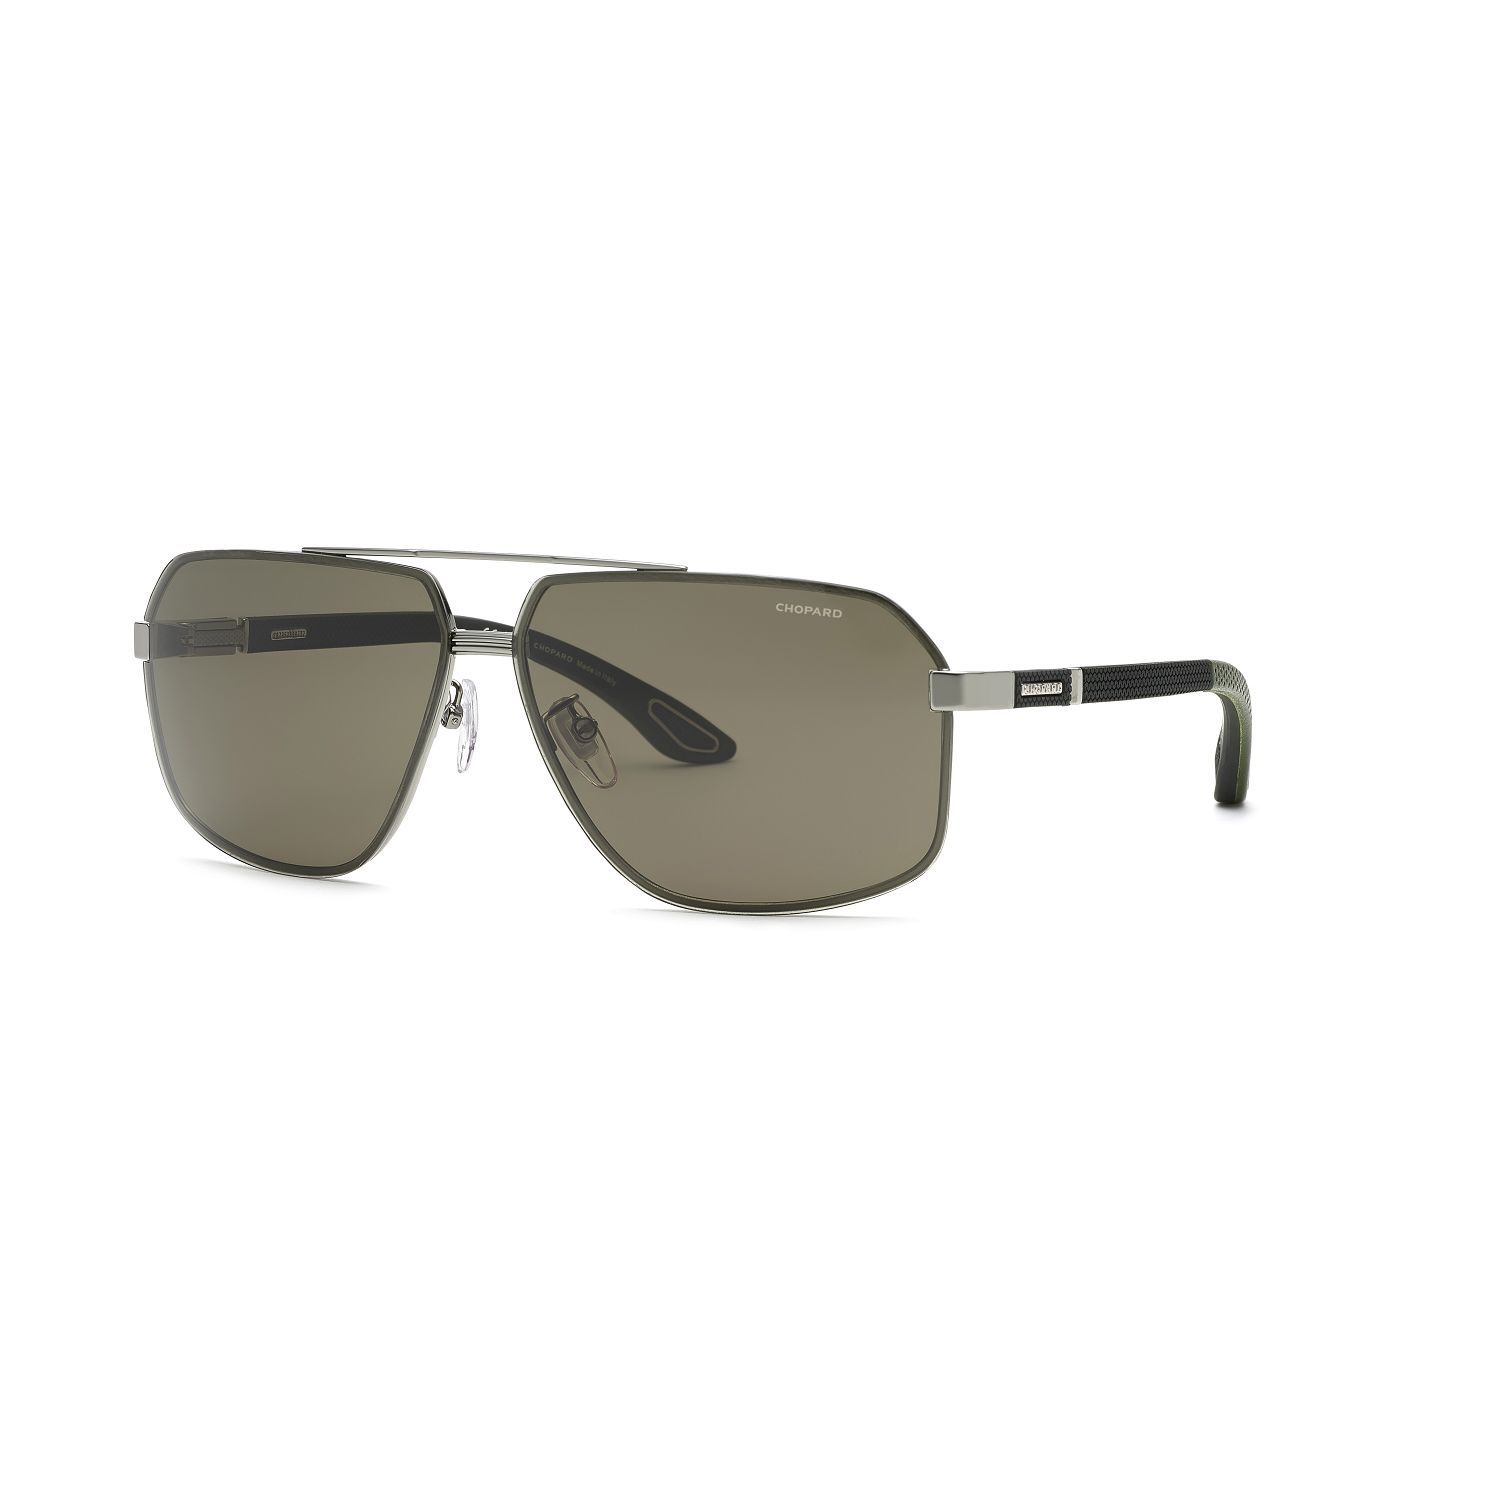 SCHG89V Square Sunglasses 09V - size 66